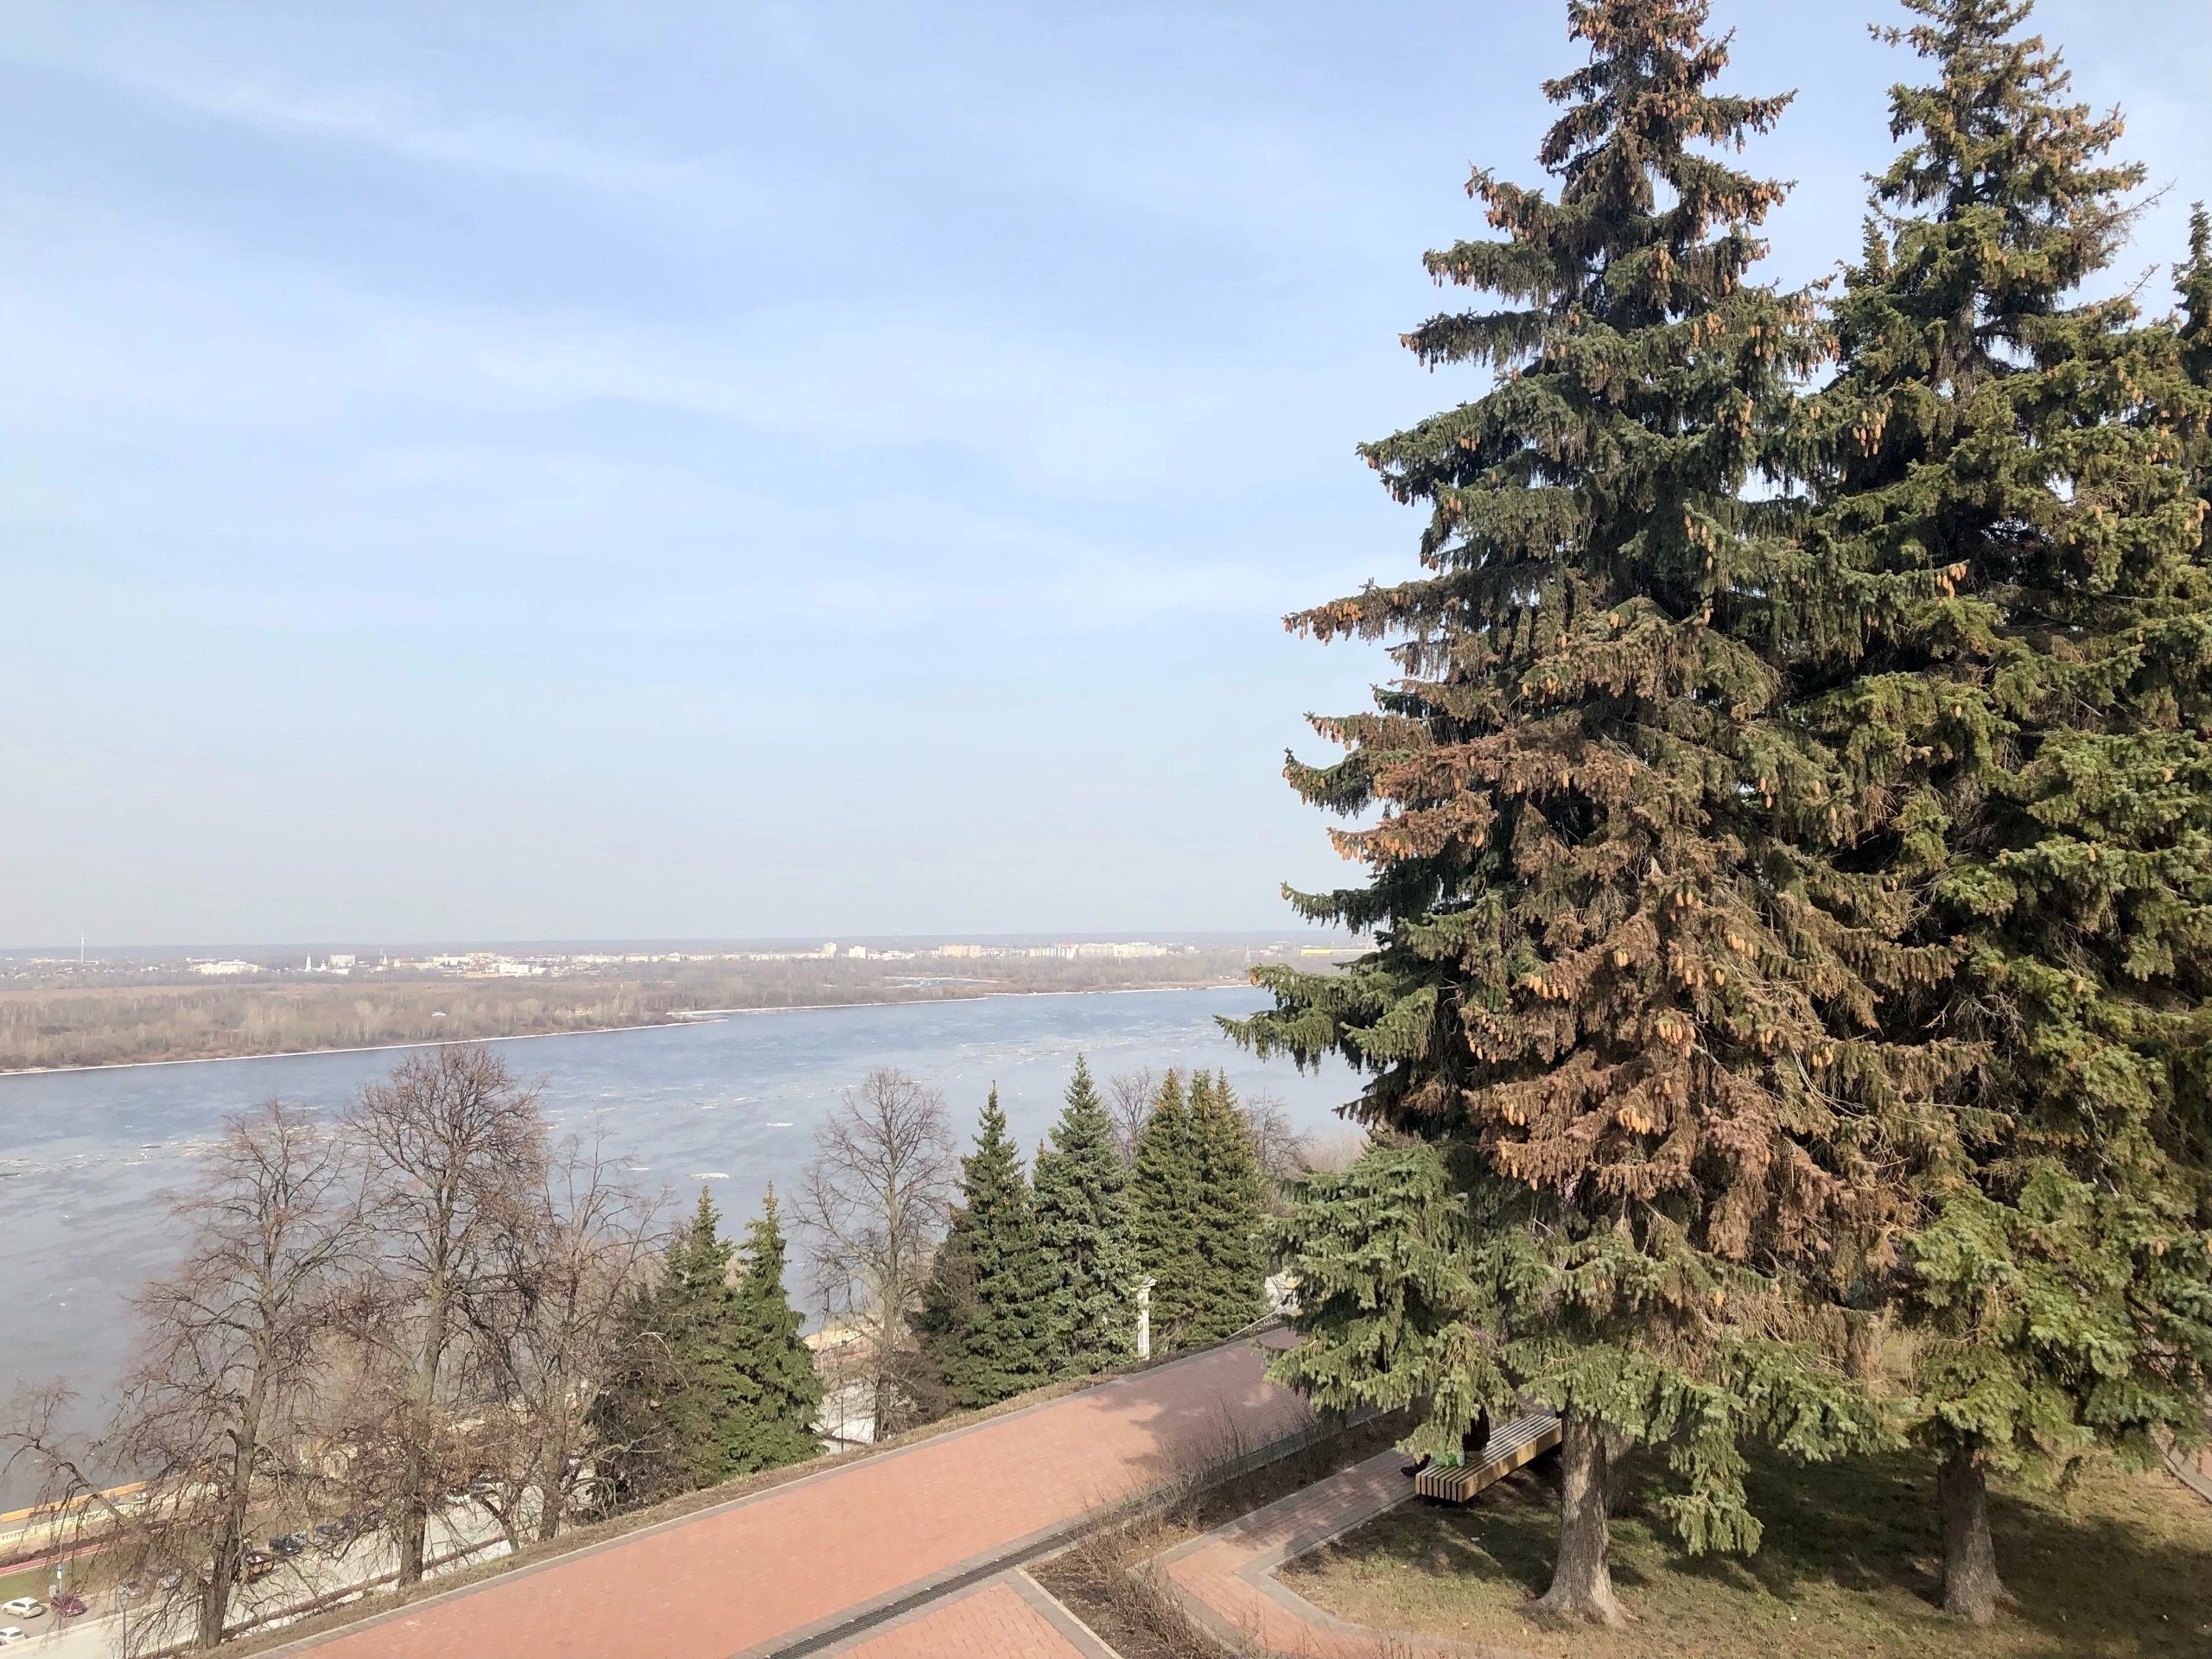 Весеннее настроение не покинет жителей Нижнего Новгорода в этот вторник